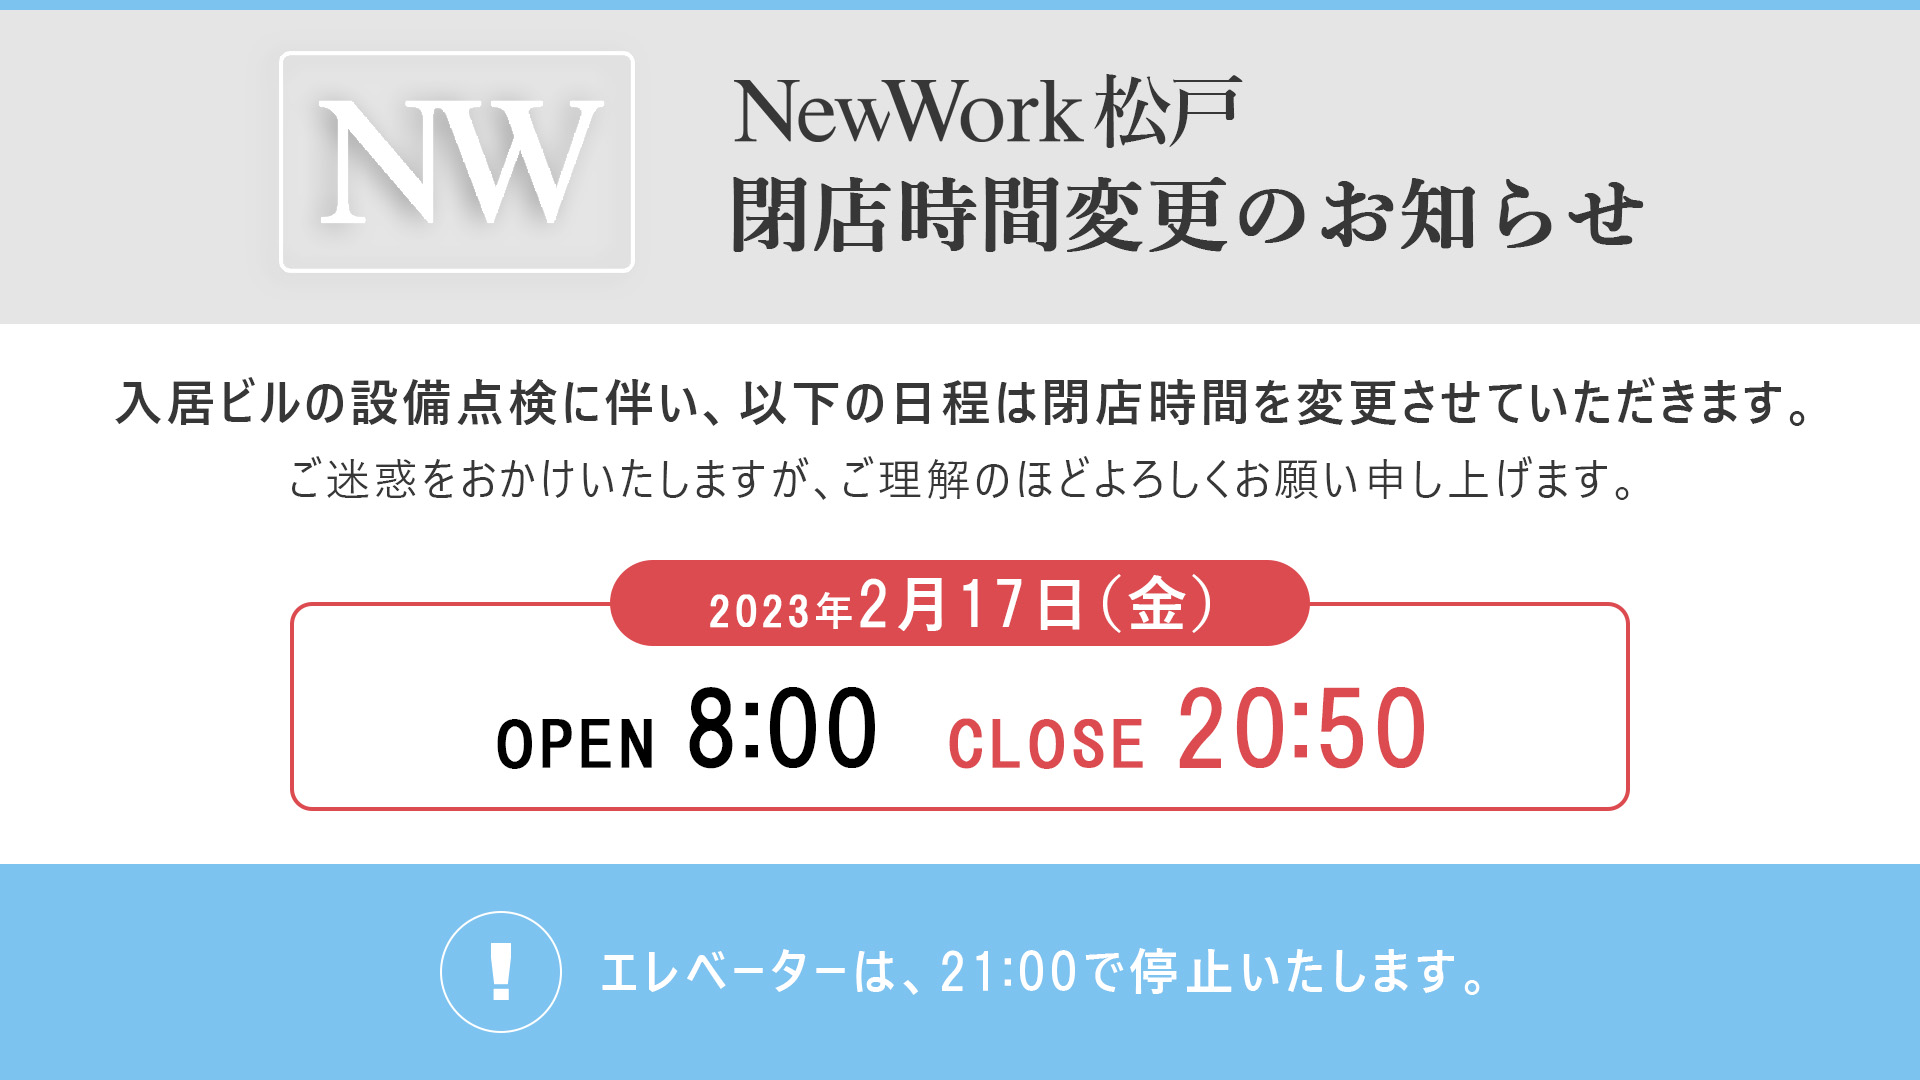 「NewWork 松戸」営業時間変更